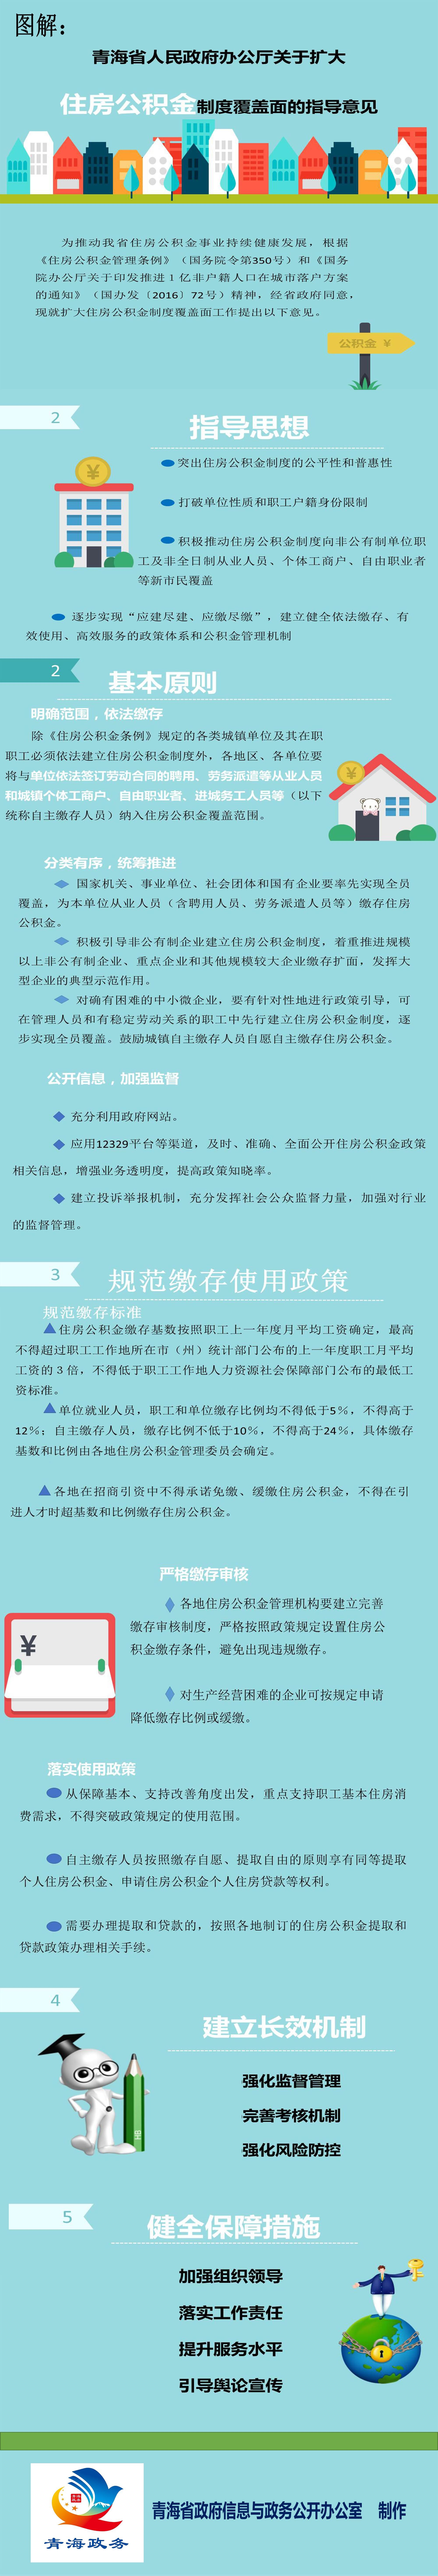 青海省人民政府办公厅关于扩大住房公积金制度覆盖面的指导意见.jpg